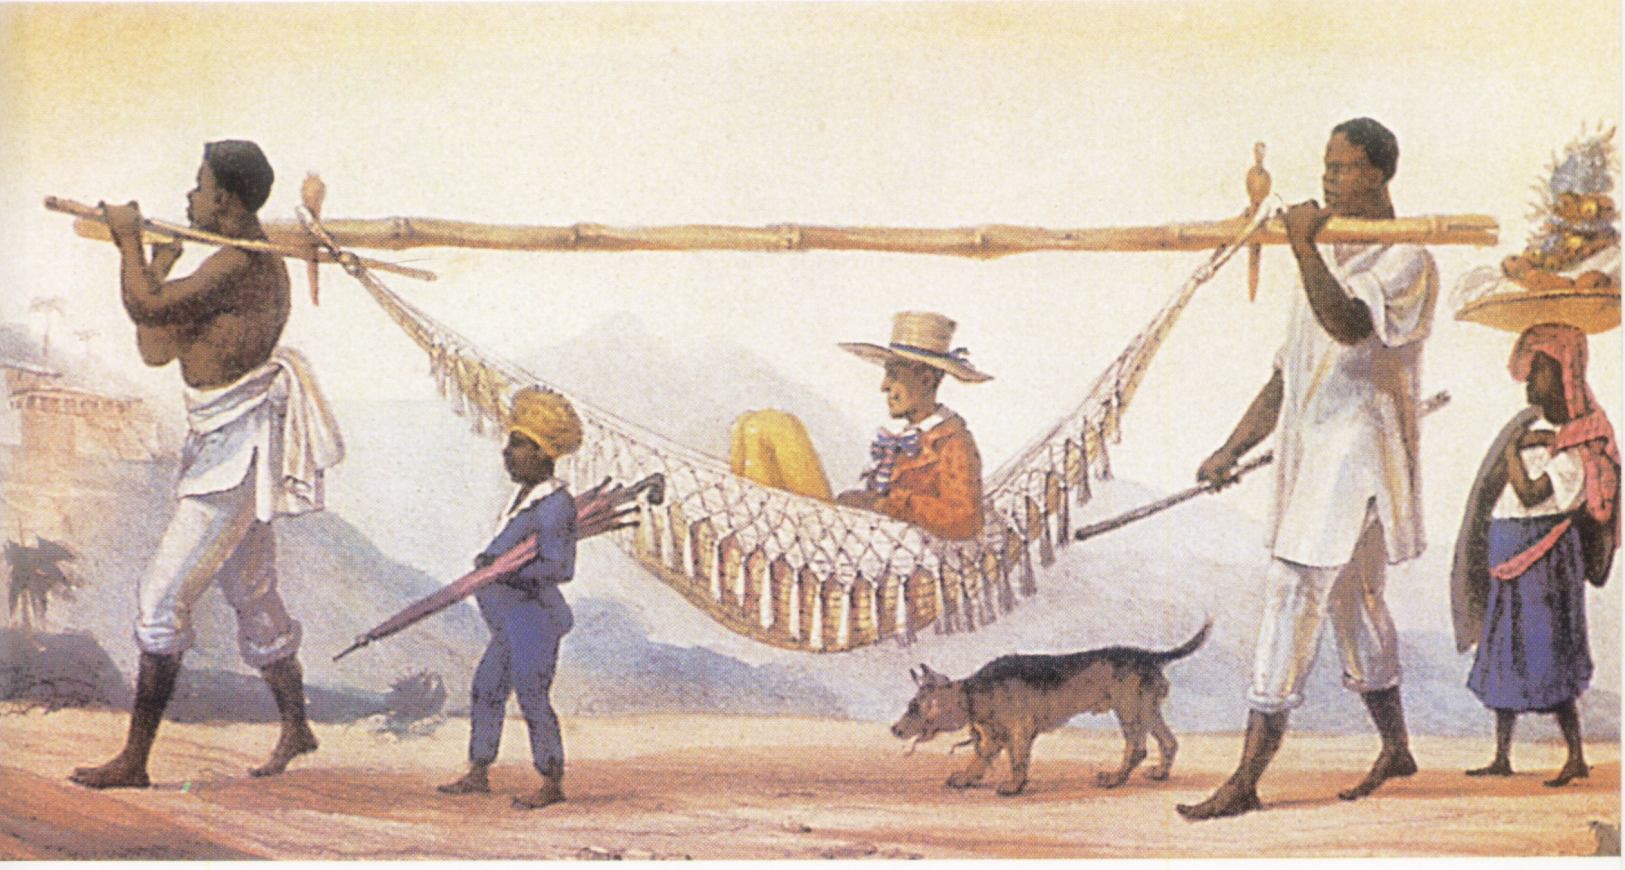 Gravure: esclaves noirs transportant un colon dans un hamac.